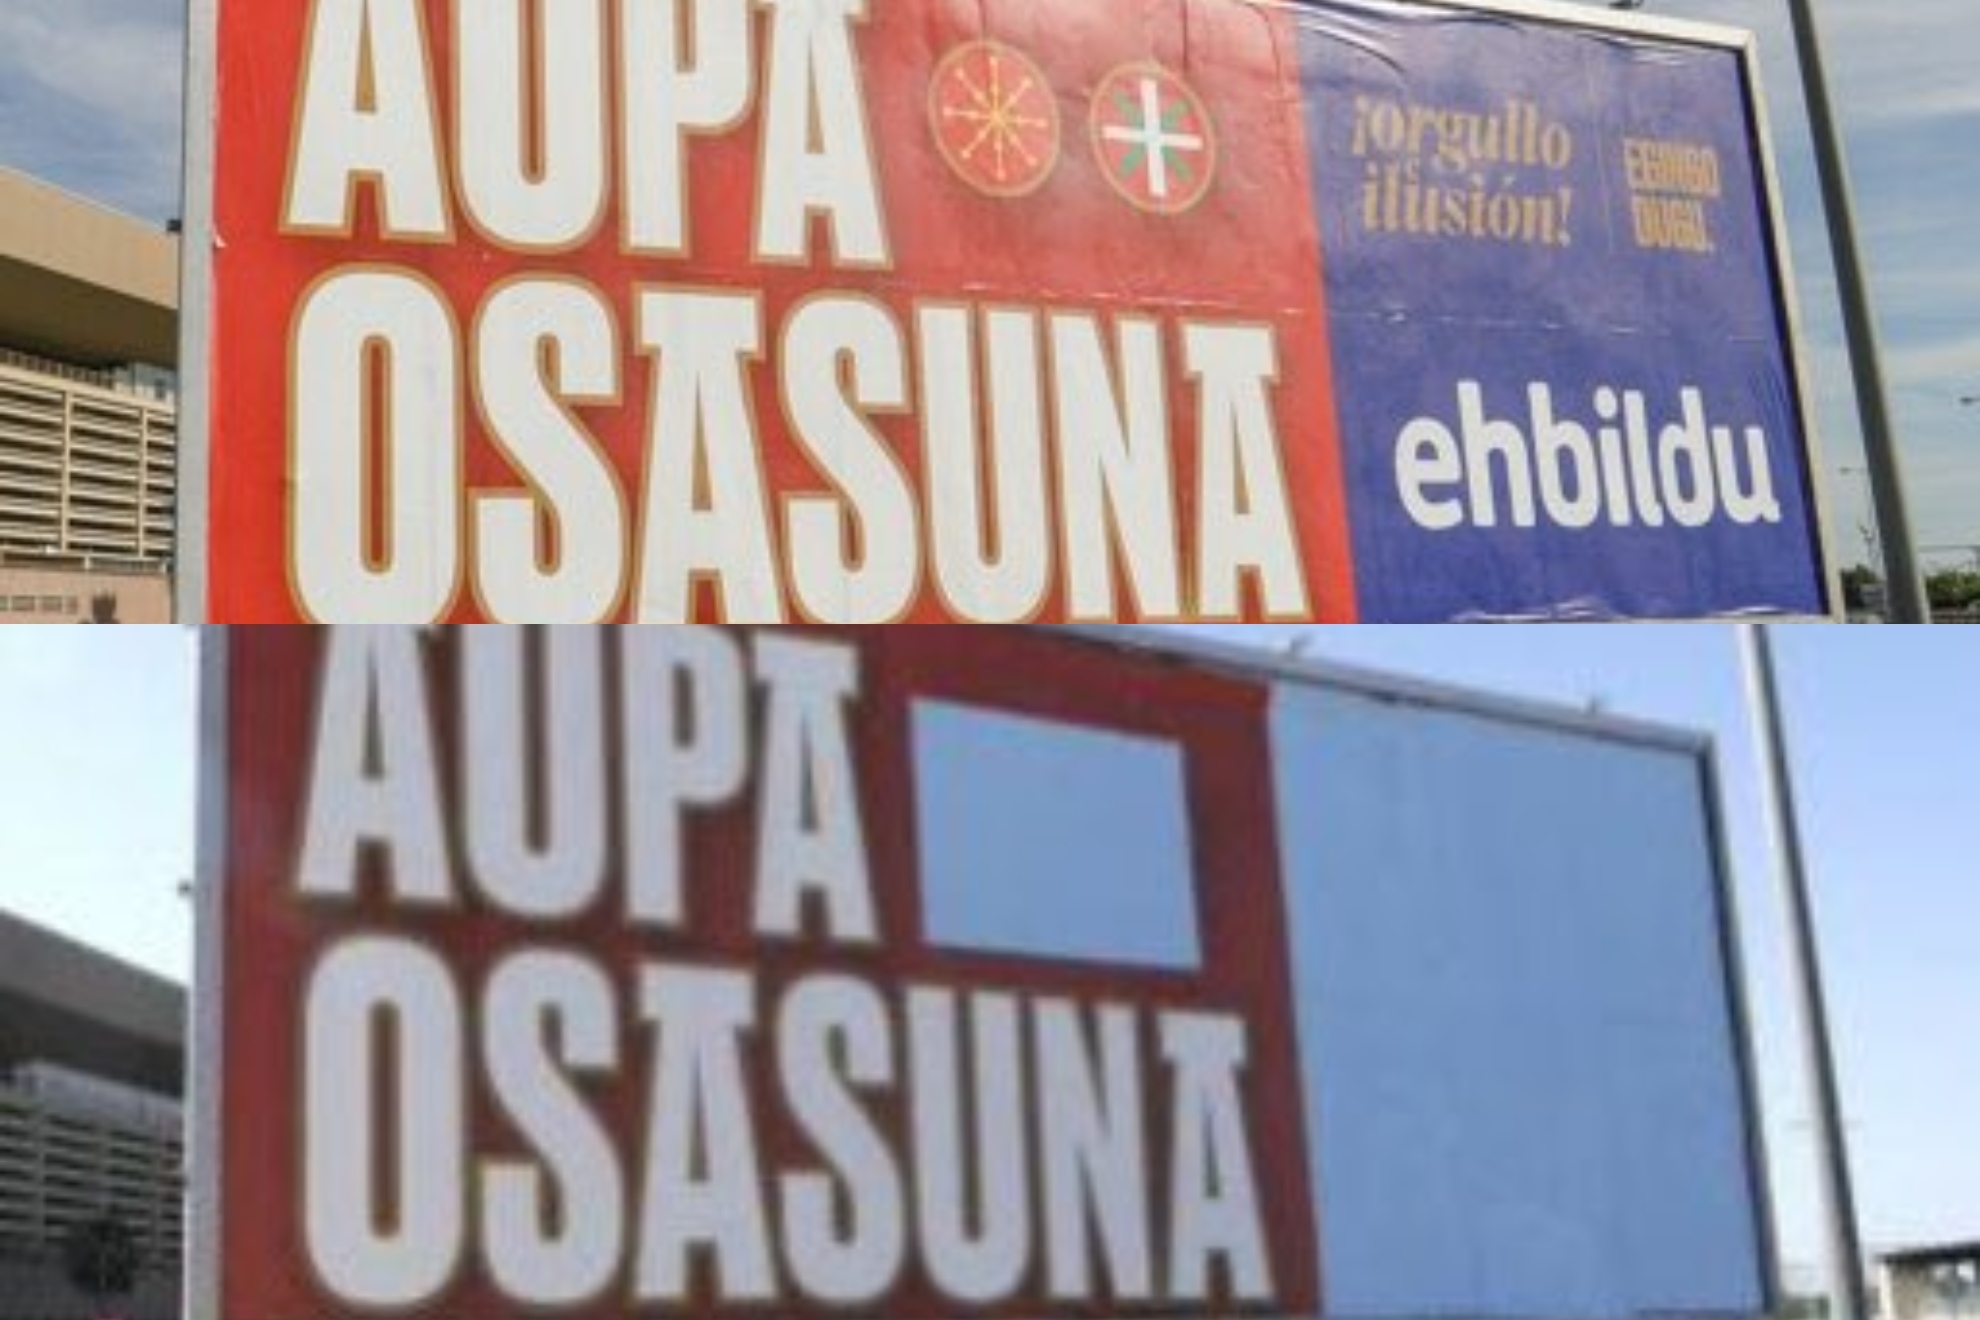 La Junta de Andaluca tapa el logo de Bildu y las banderas de Navarra y el Pas Vasco de las vallas en apoyo a Osasuna